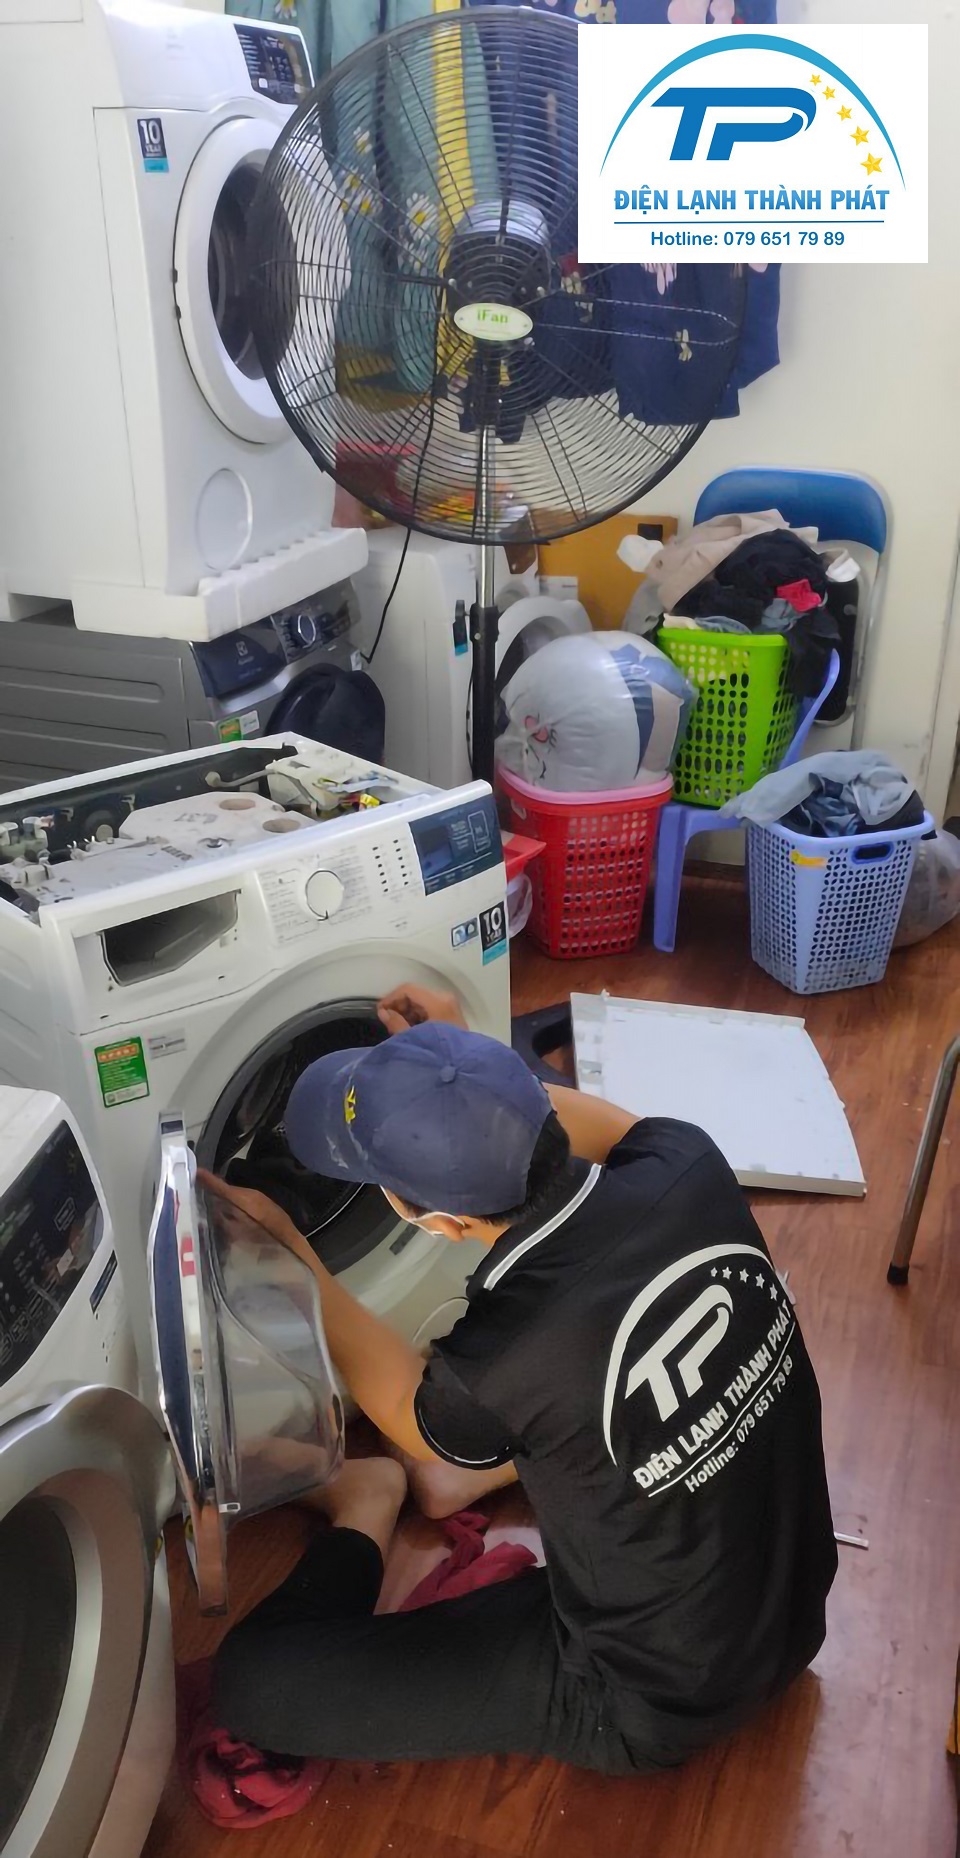 Dịch vụ vệ sinh máy giặt của trung tâm luôn đảm bảo đáp ứng đầy đủ yêu cầu của khách hàng.